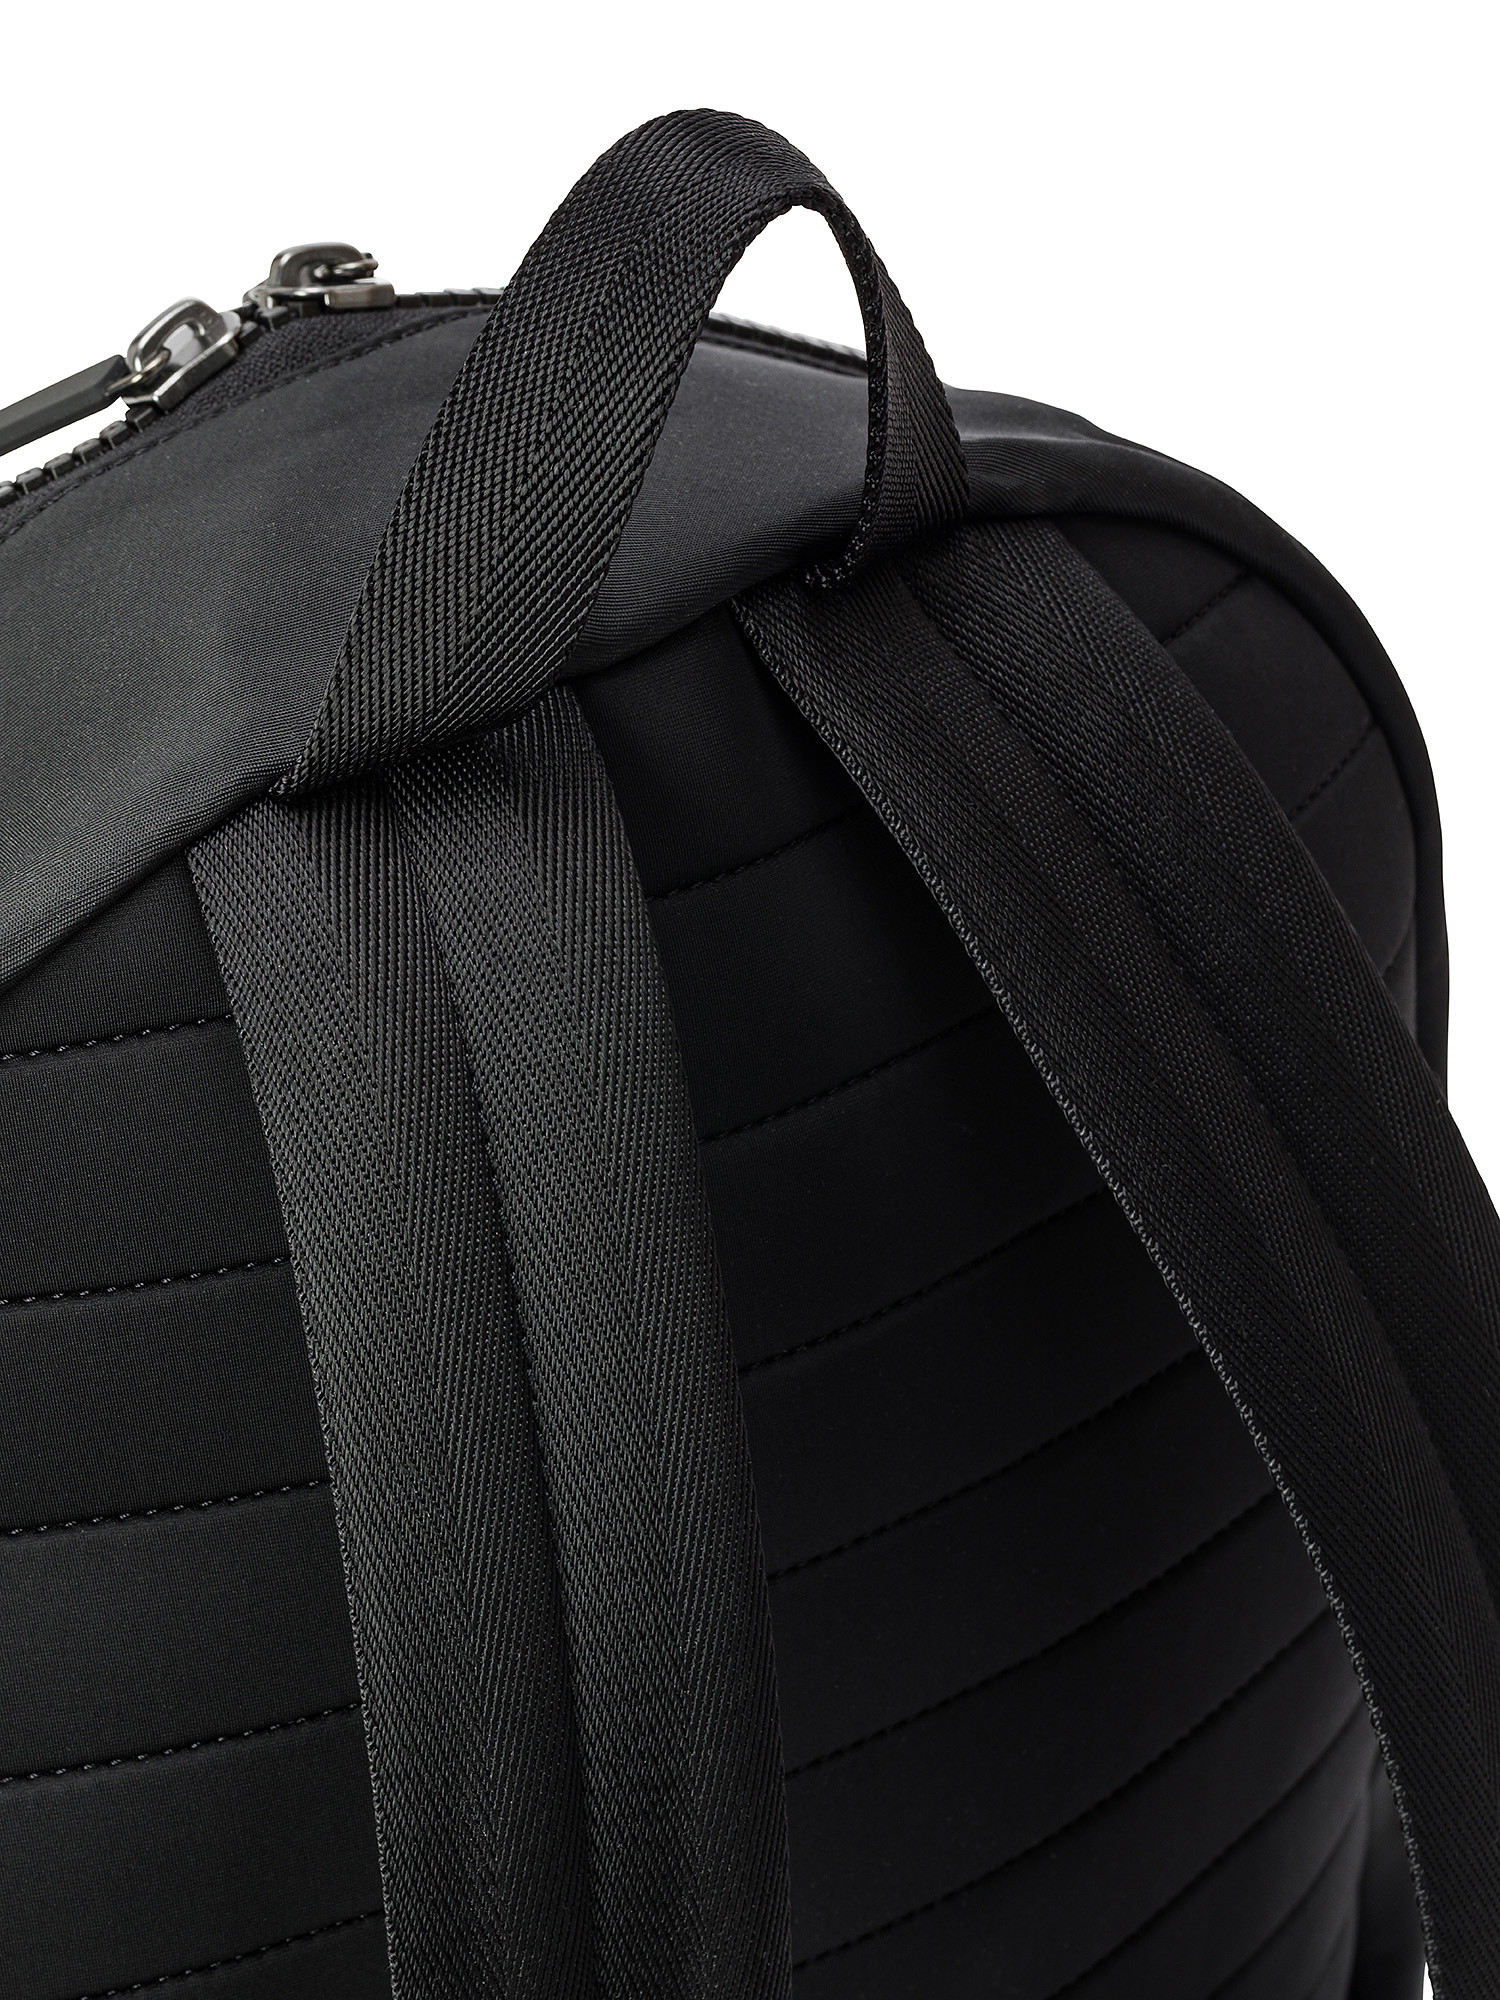 Hugo - Logo backpack, Black, large image number 2